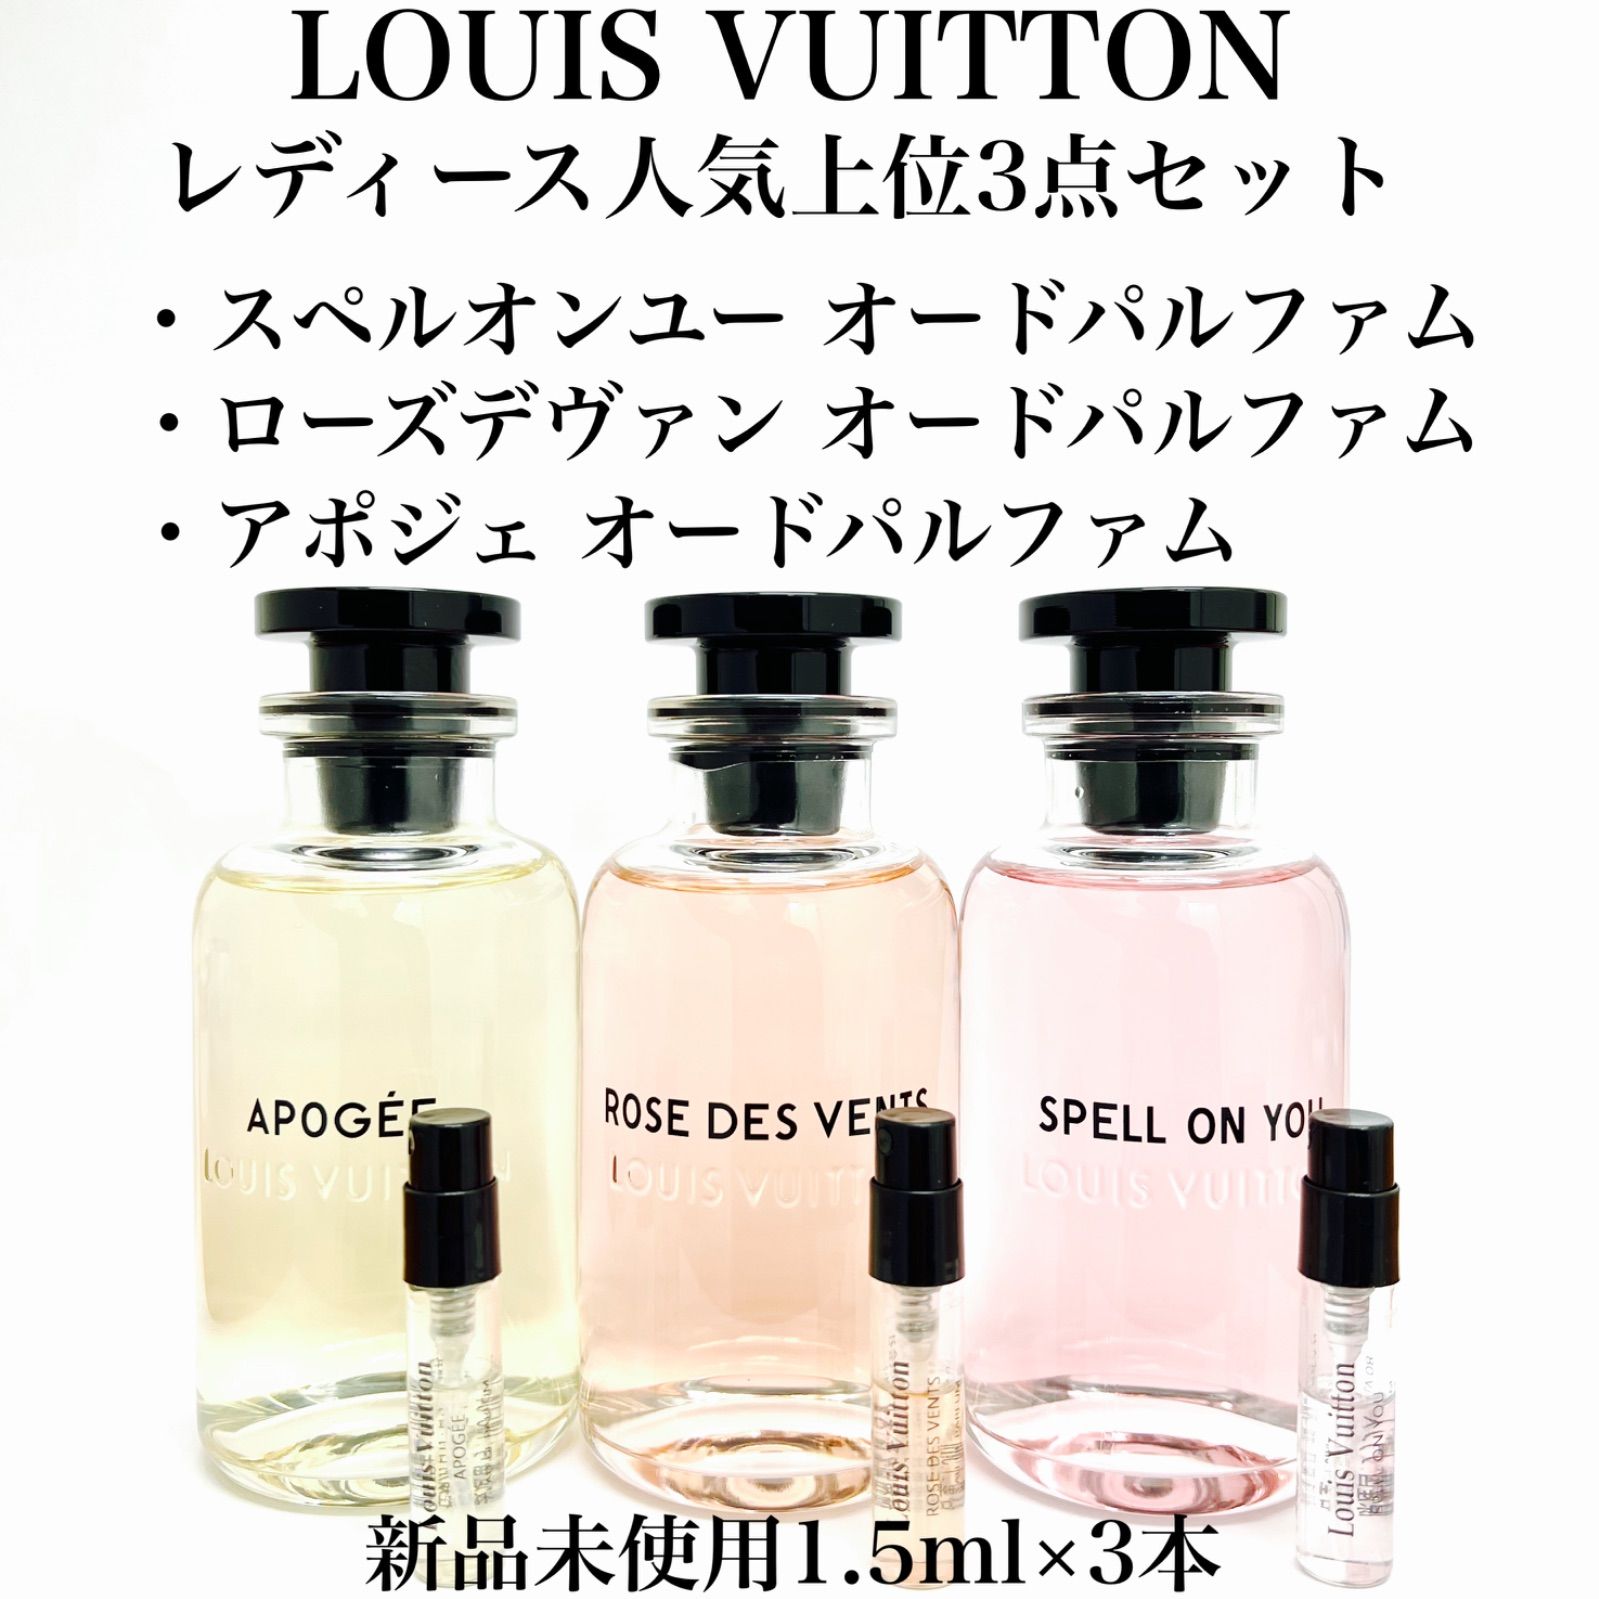 Louis Vuitton ルイヴィトン レディース人気3点 香水 1.5ml - セット割